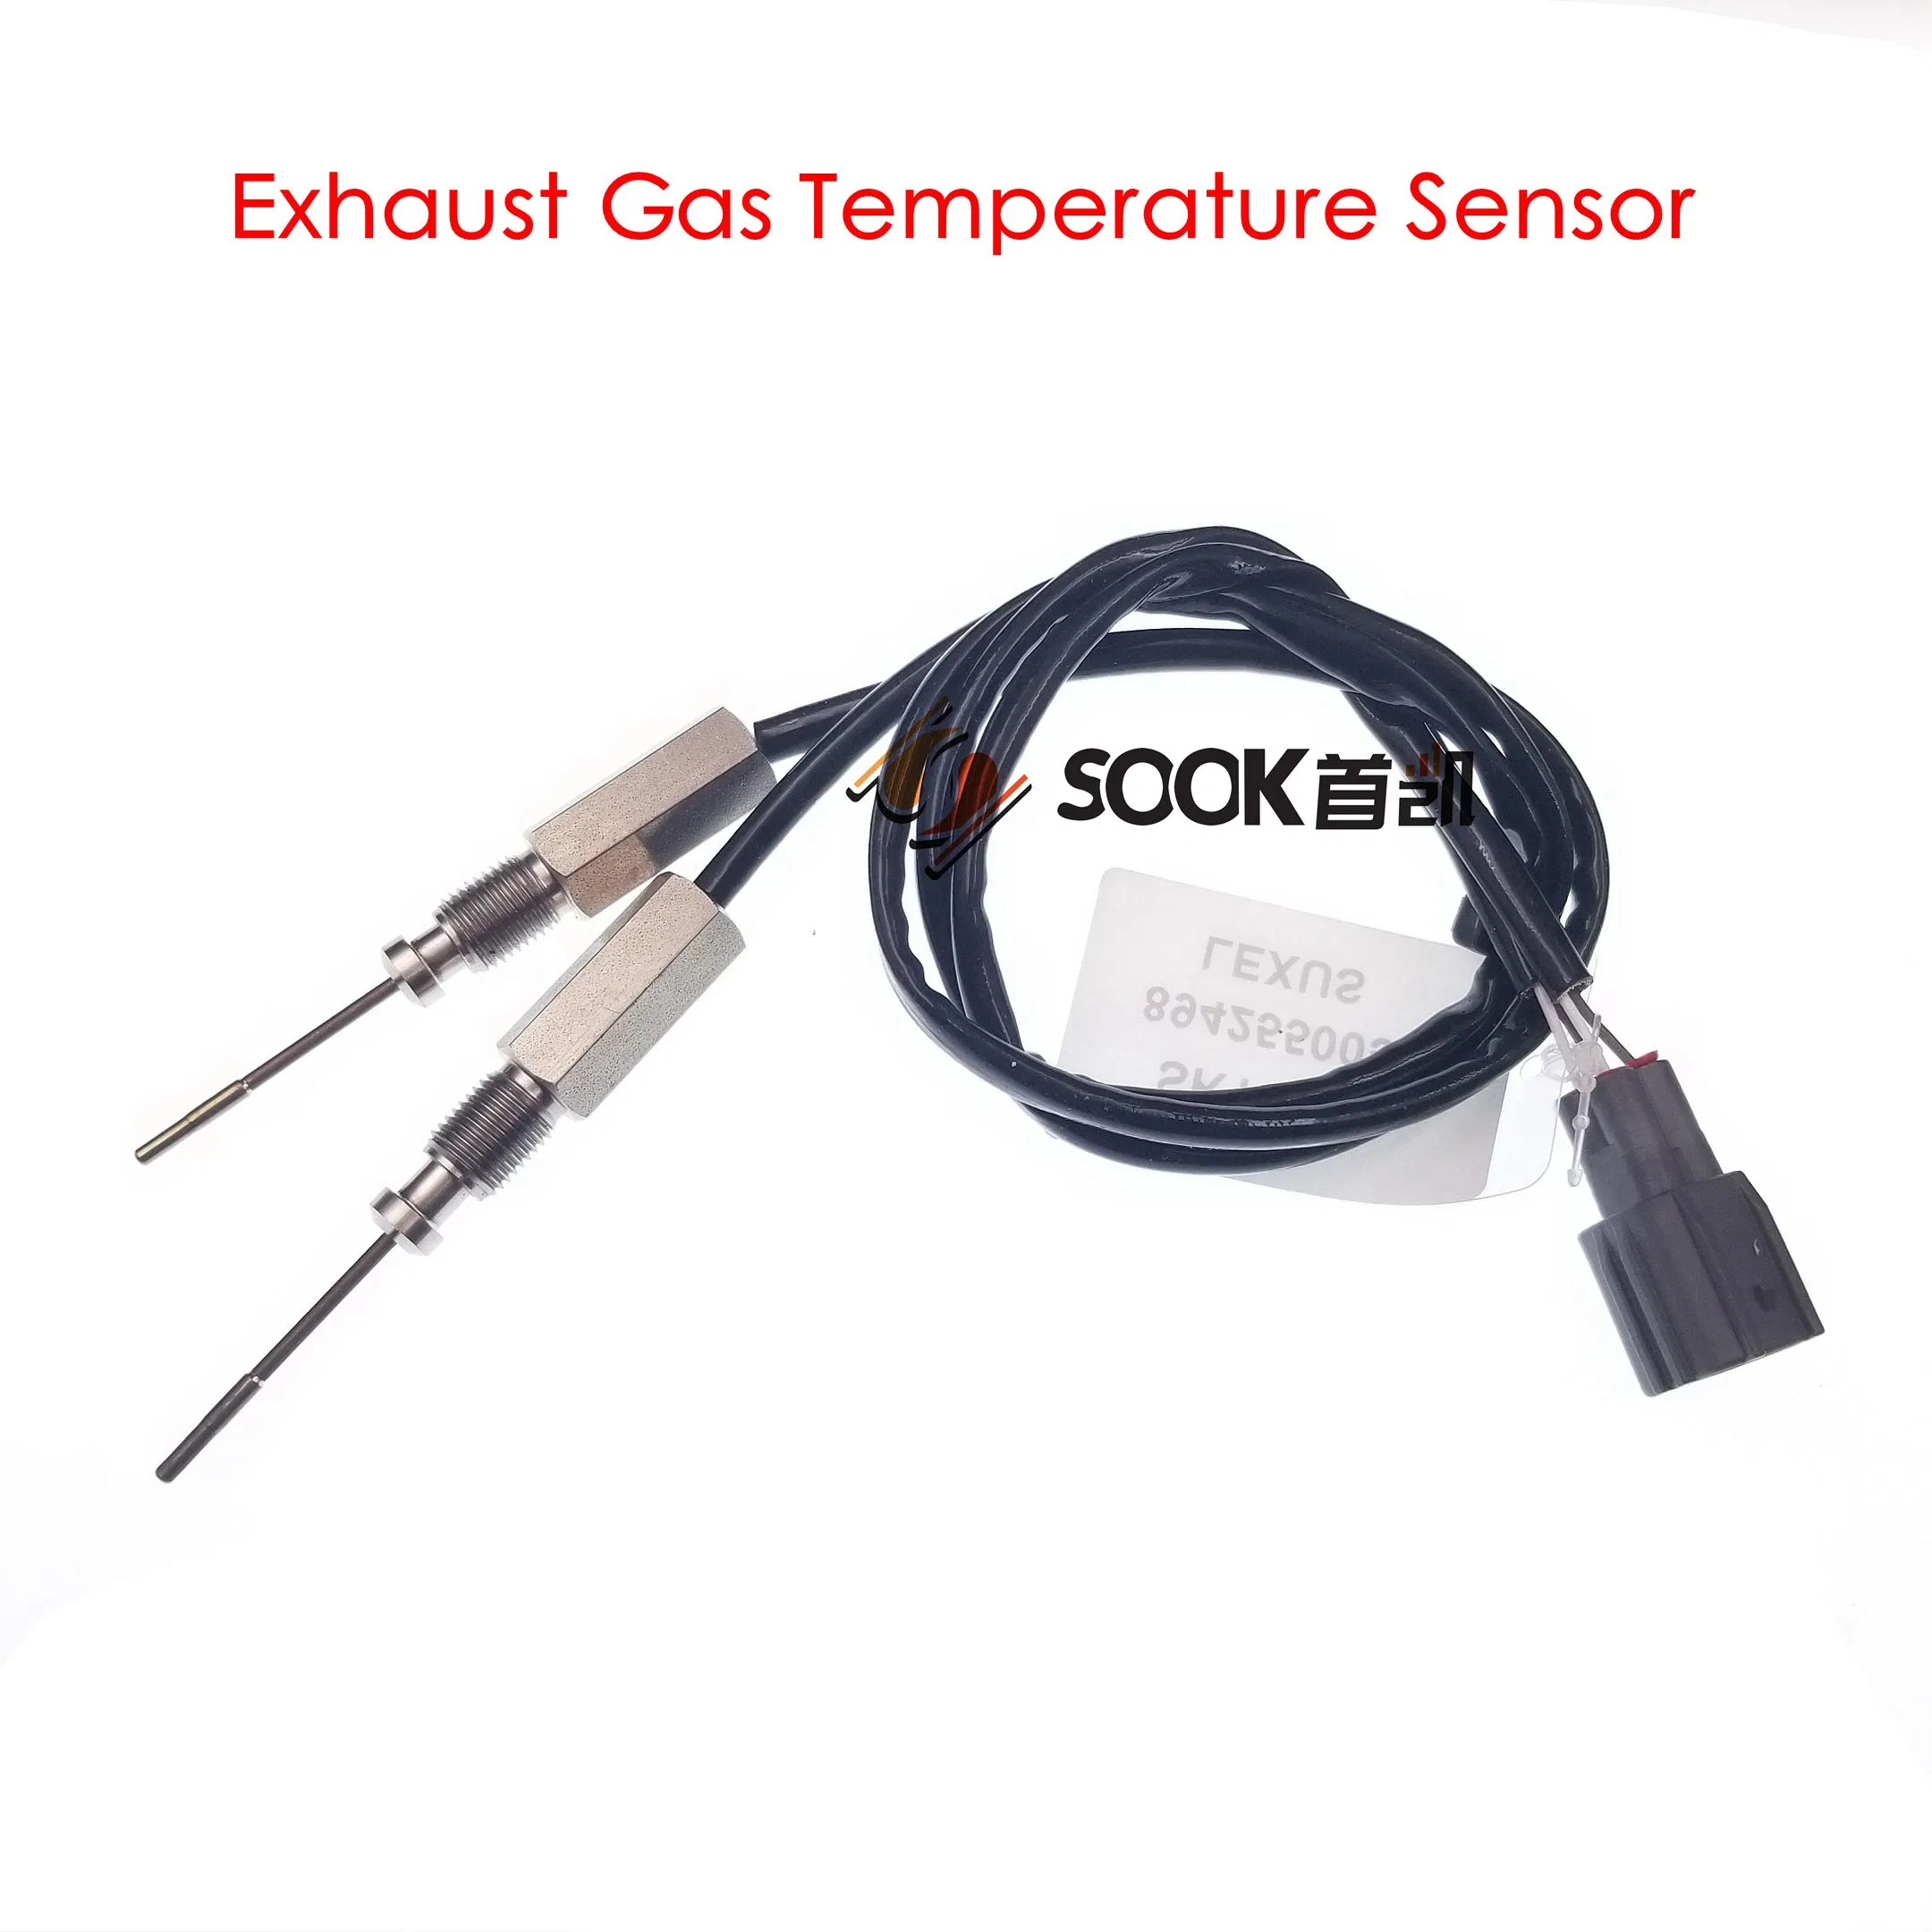 Auto Sensor ABS Sensor Egt Sensor Exhaust Gas Temperature Sensor Nox Sensor Crankshaft Position Sensor Camshaft Position Sensor para Fo Rd Re Nault Op EL Vo Lvo